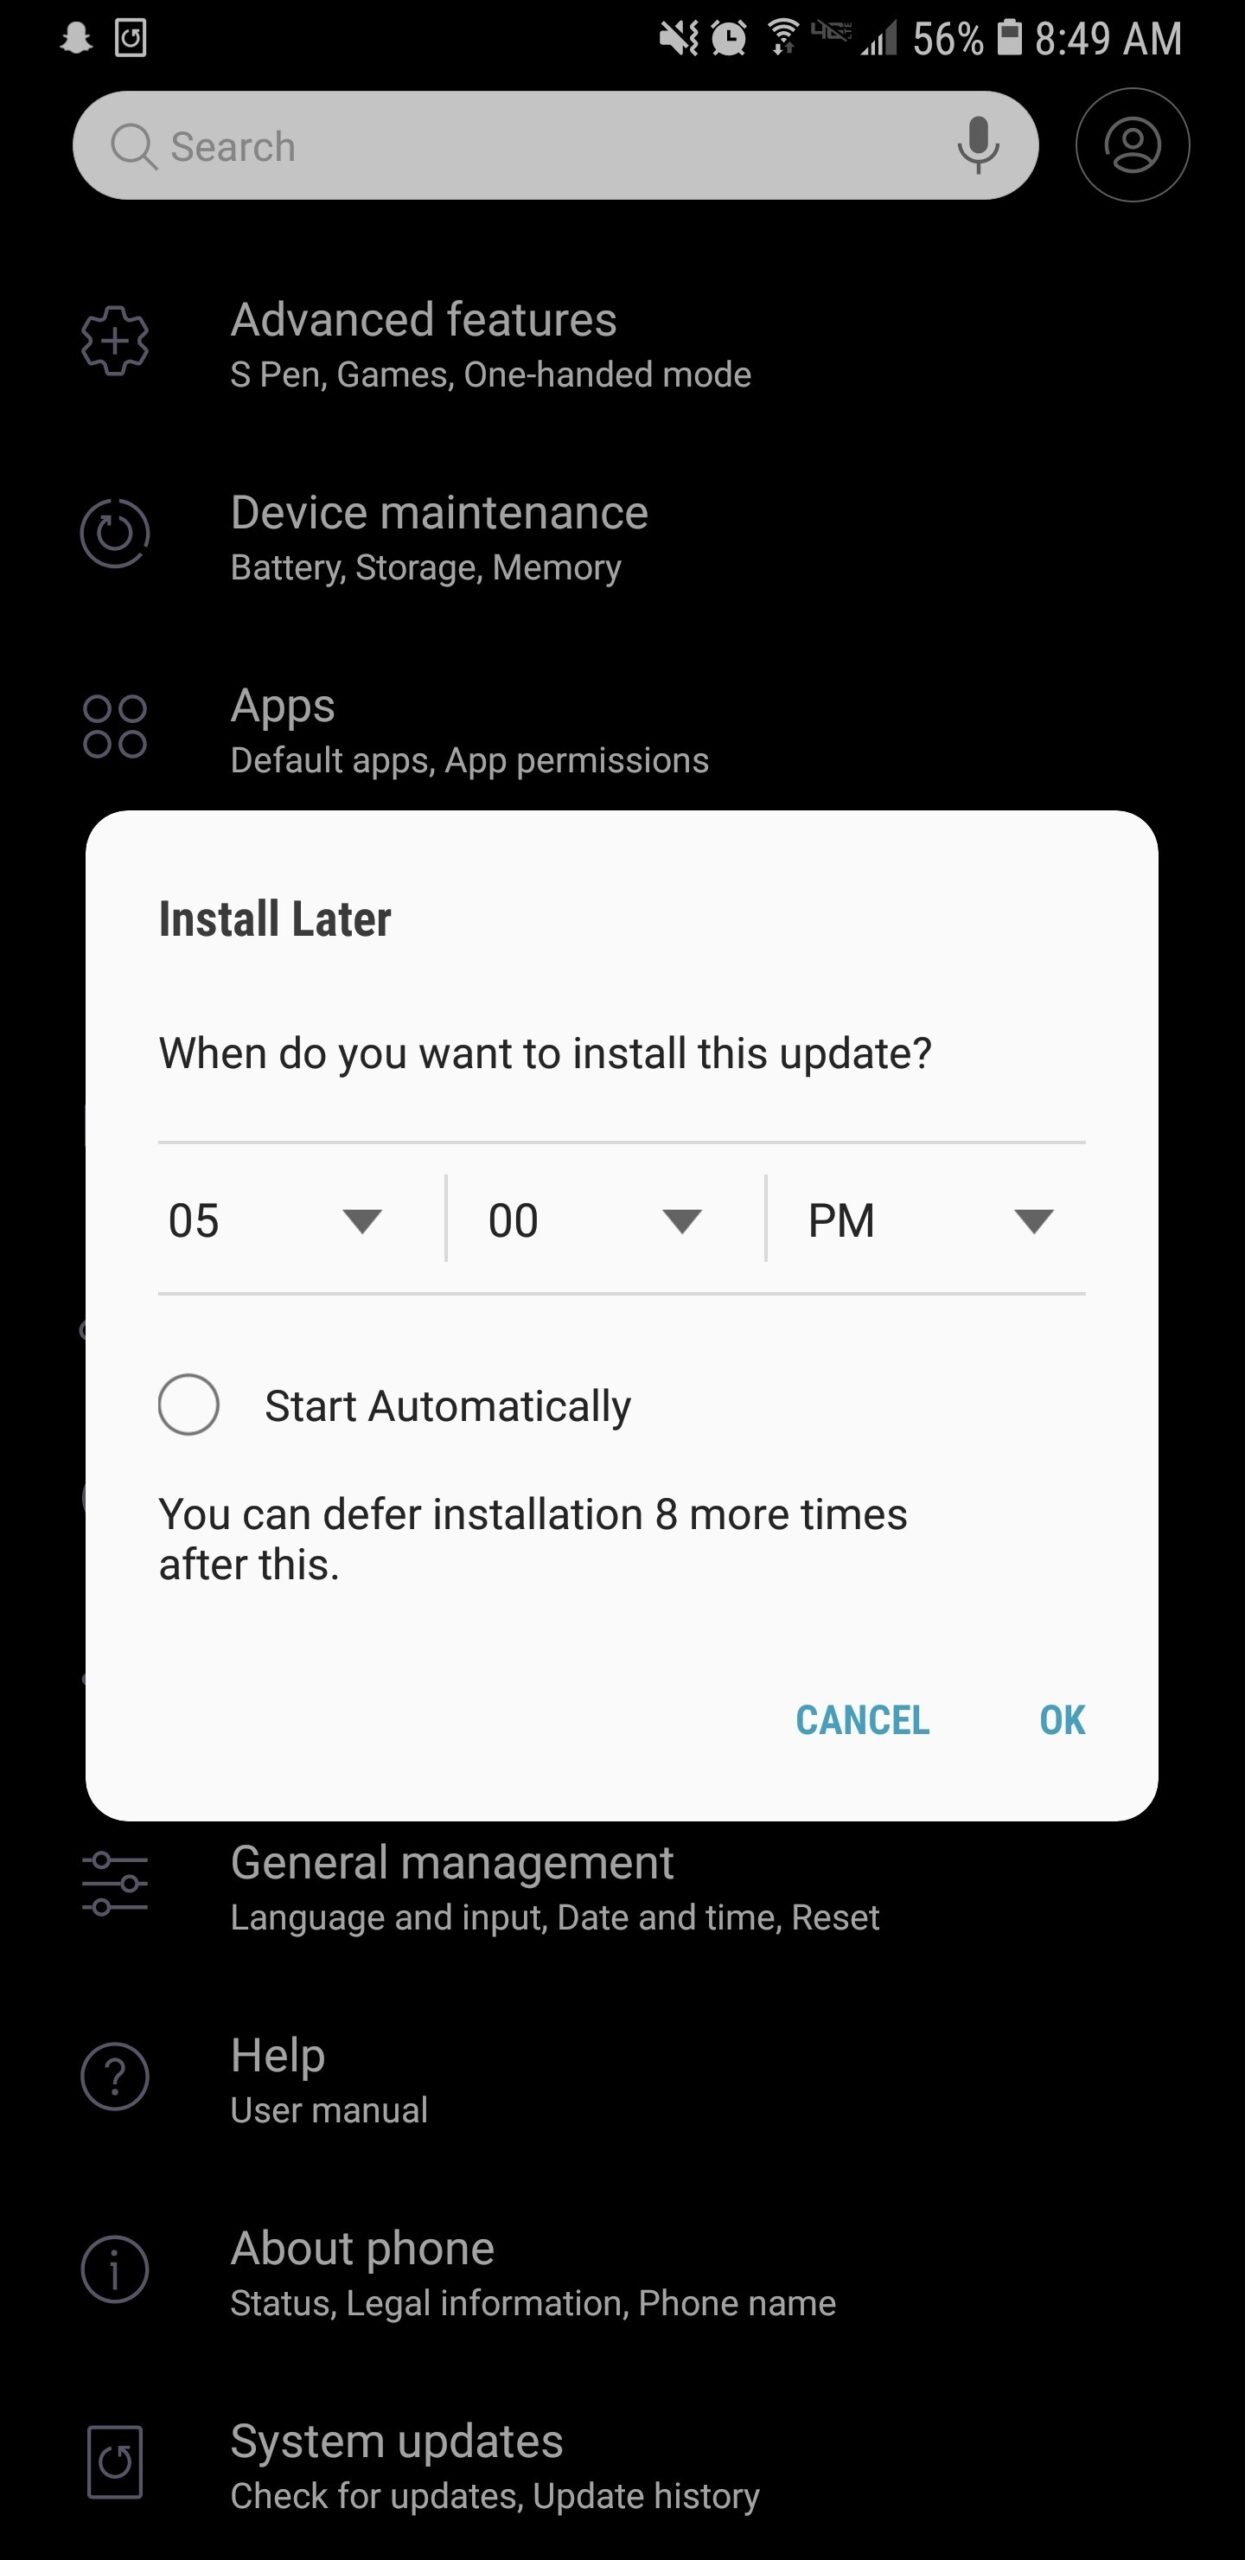 Samsung obligará a descargar actualizaciones tras posponerlas un máximo de 10 veces